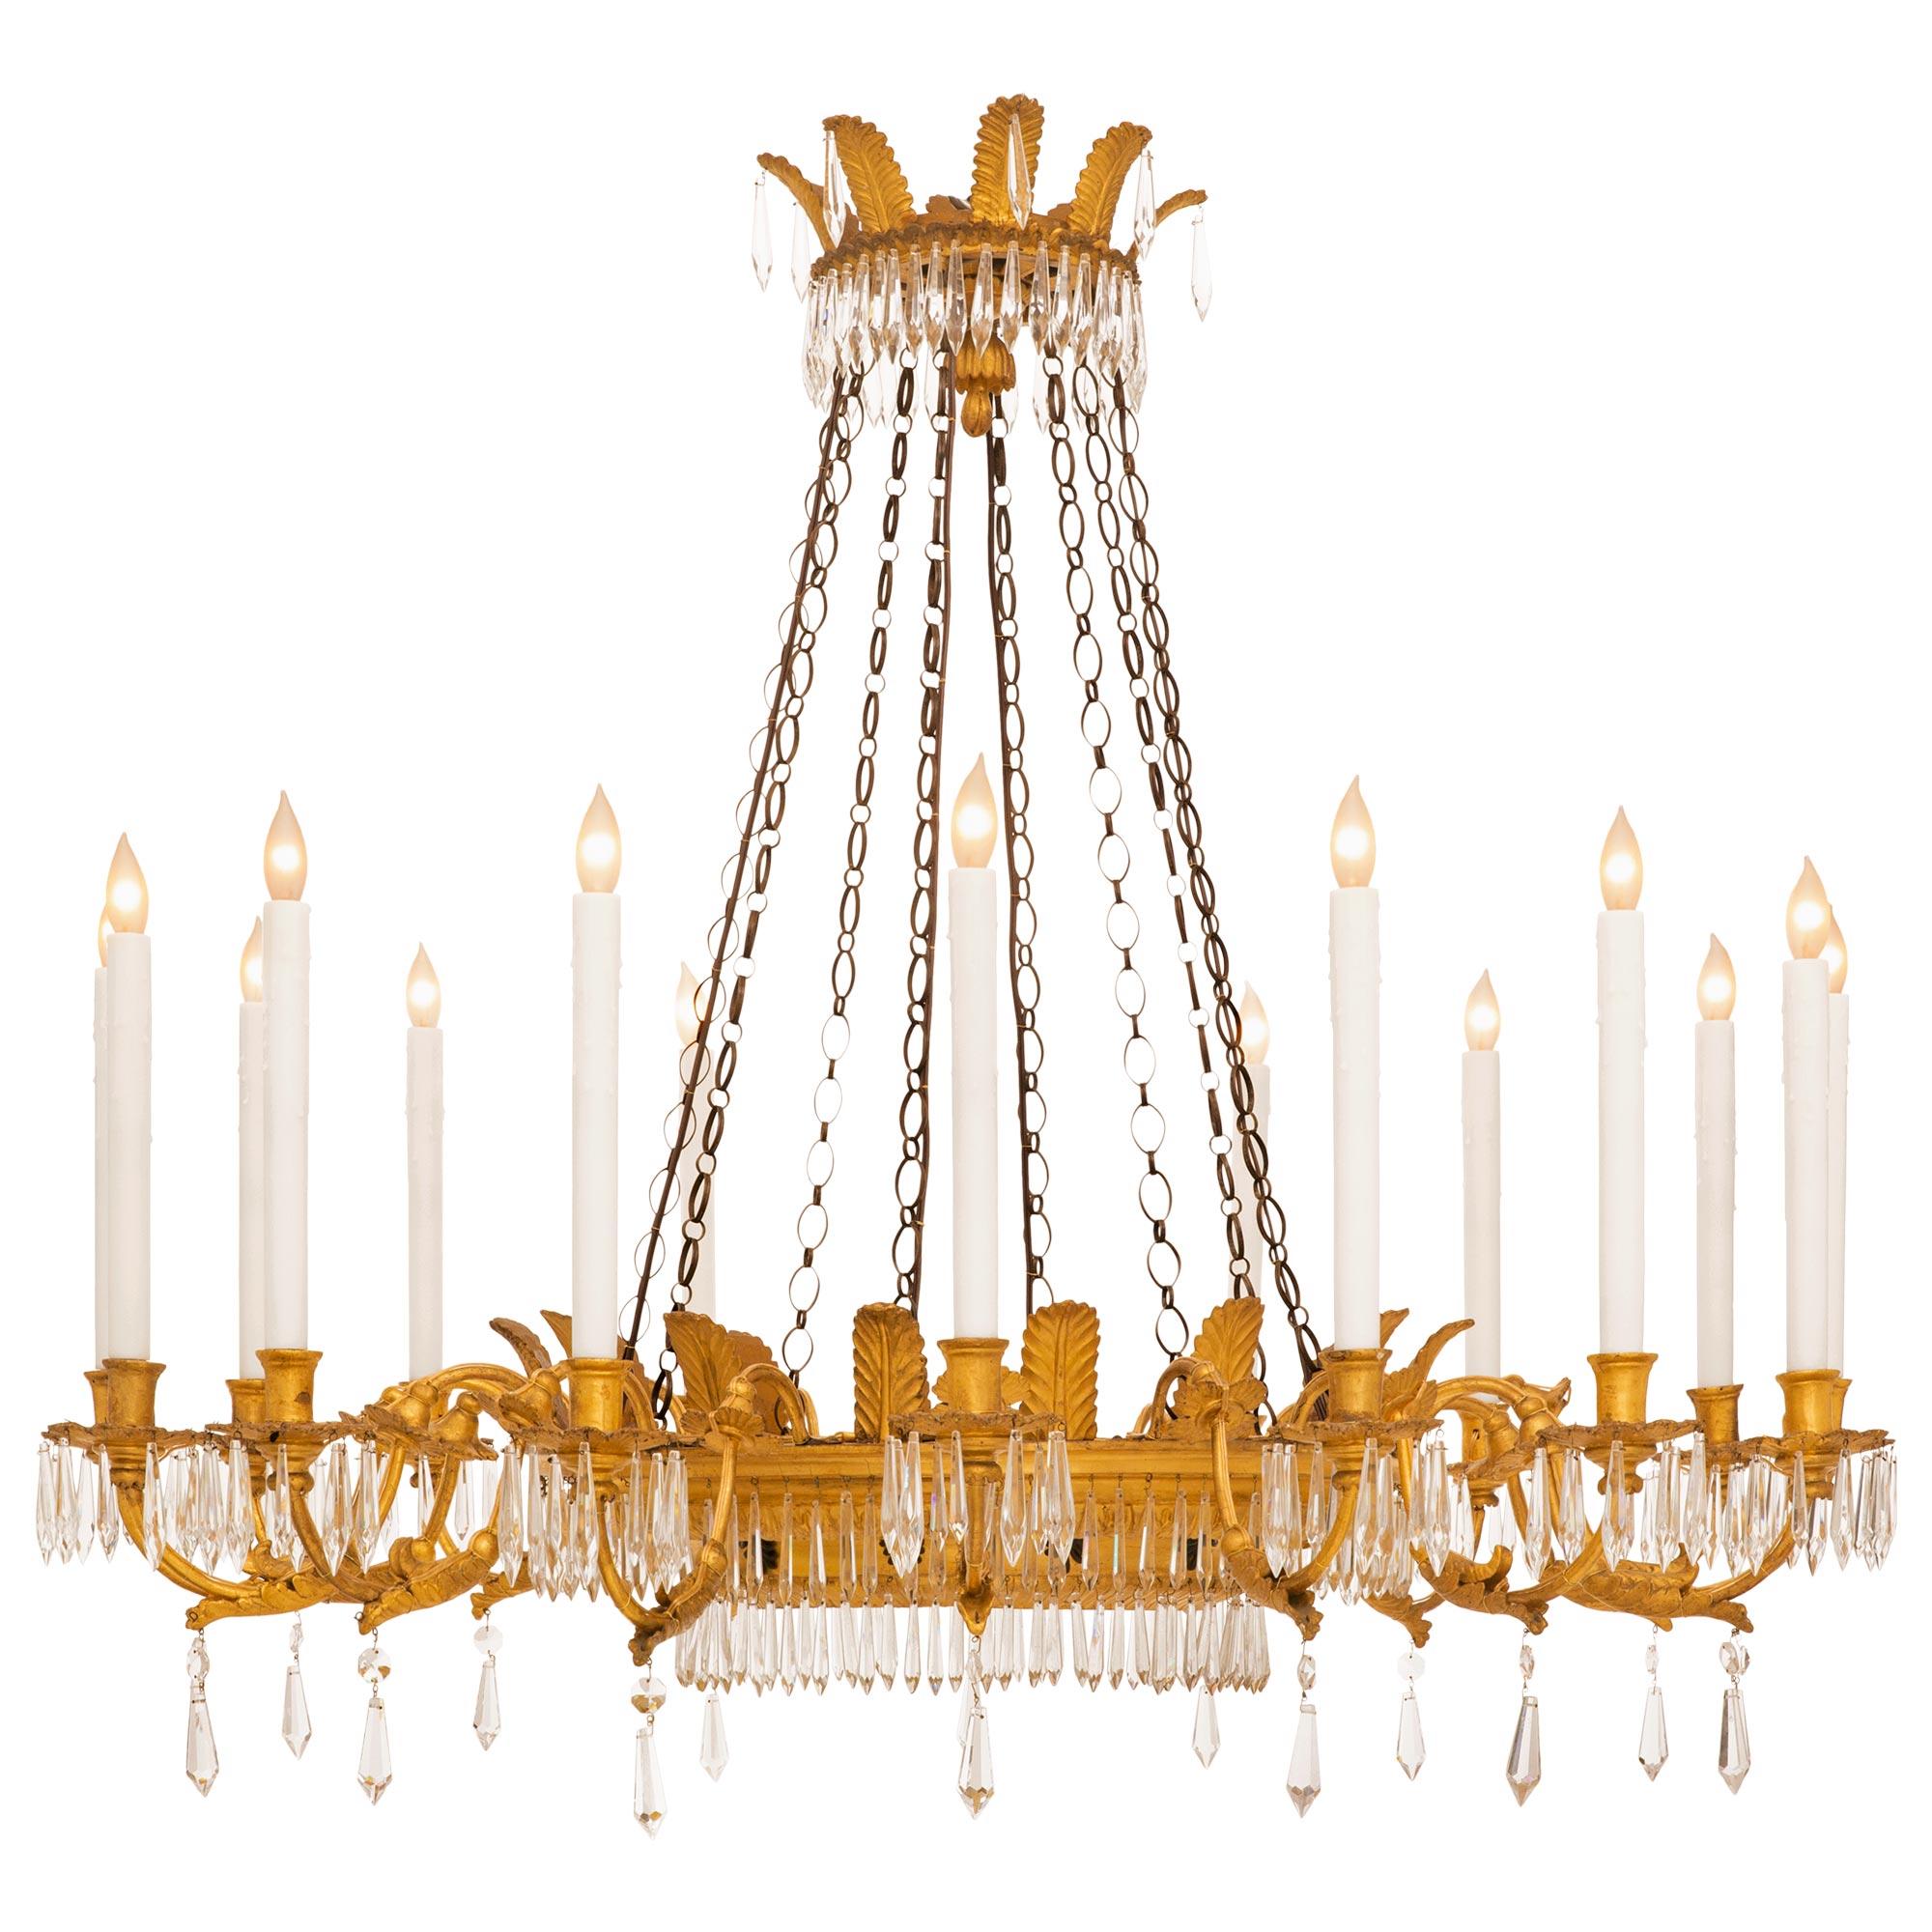 Magnifique et très élégant lustre italien d'époque Louis XVI en bois doré et cristal. Le lustre à seize branches est centré par un superbe dôme en cristal taillé et ajusté, orné d'exquis motifs floraux merveilleusement exécutés et d'un ensemble très